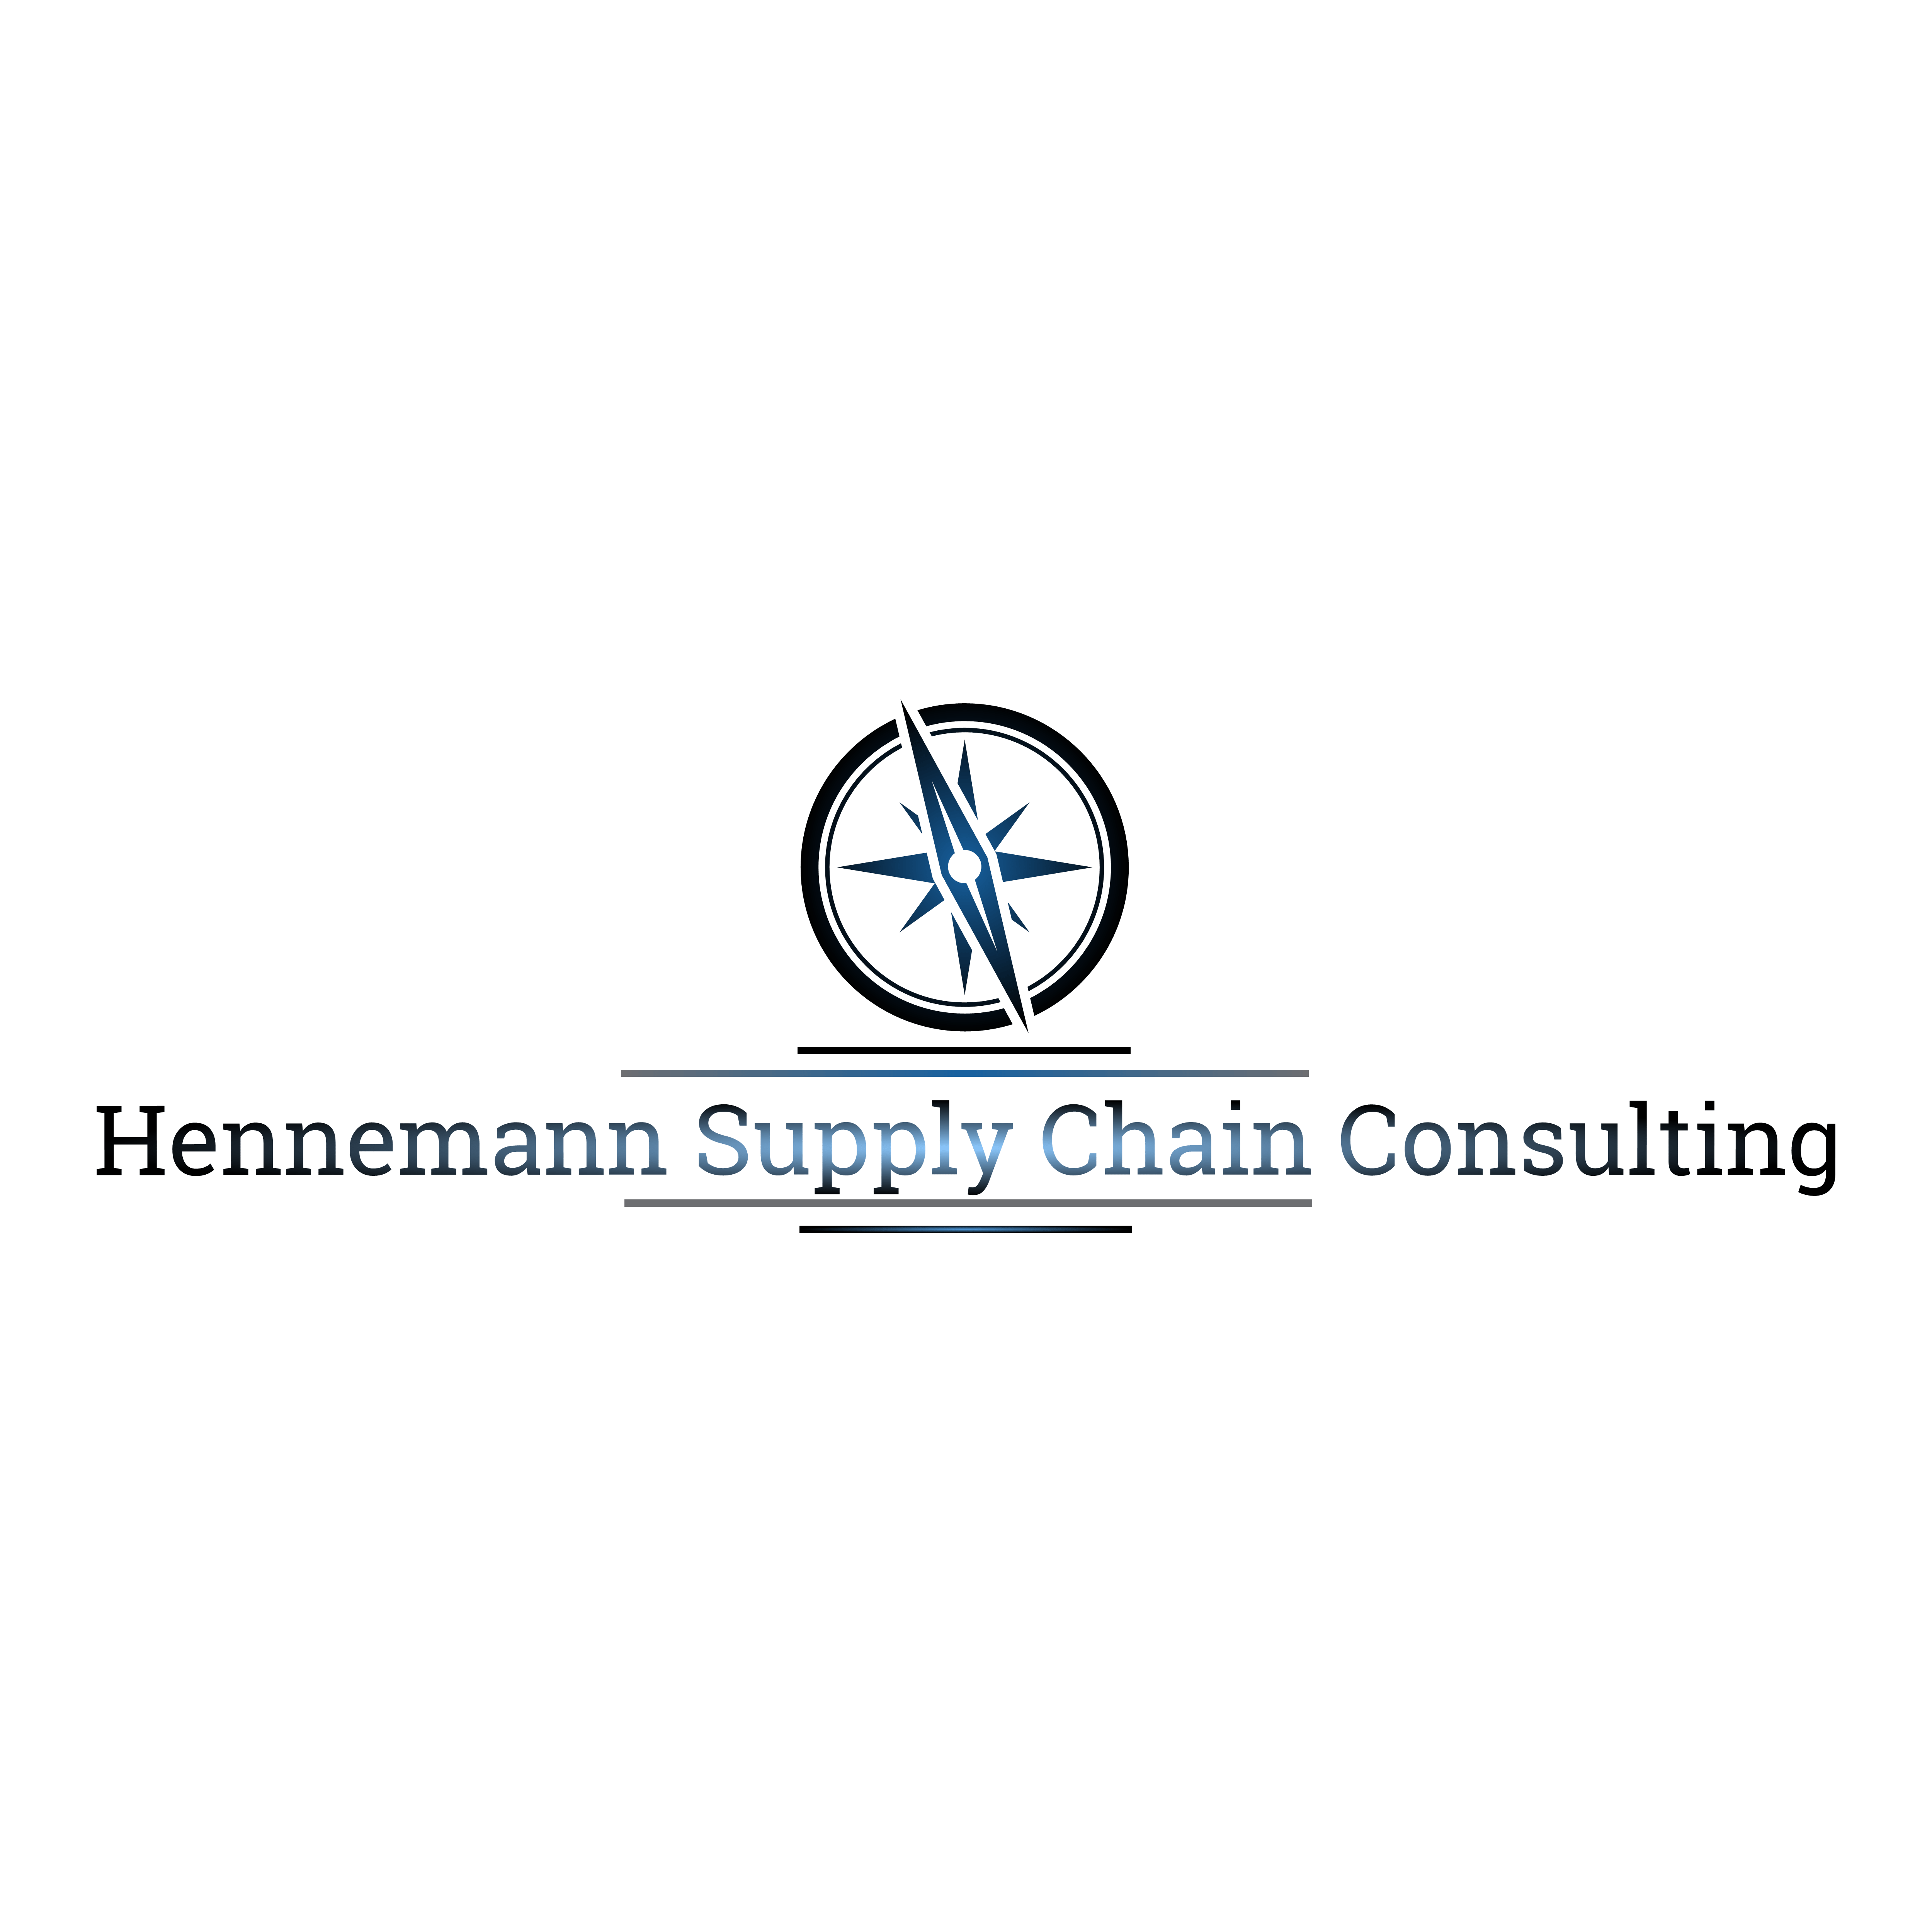 Hennemann supply Chain Consulting